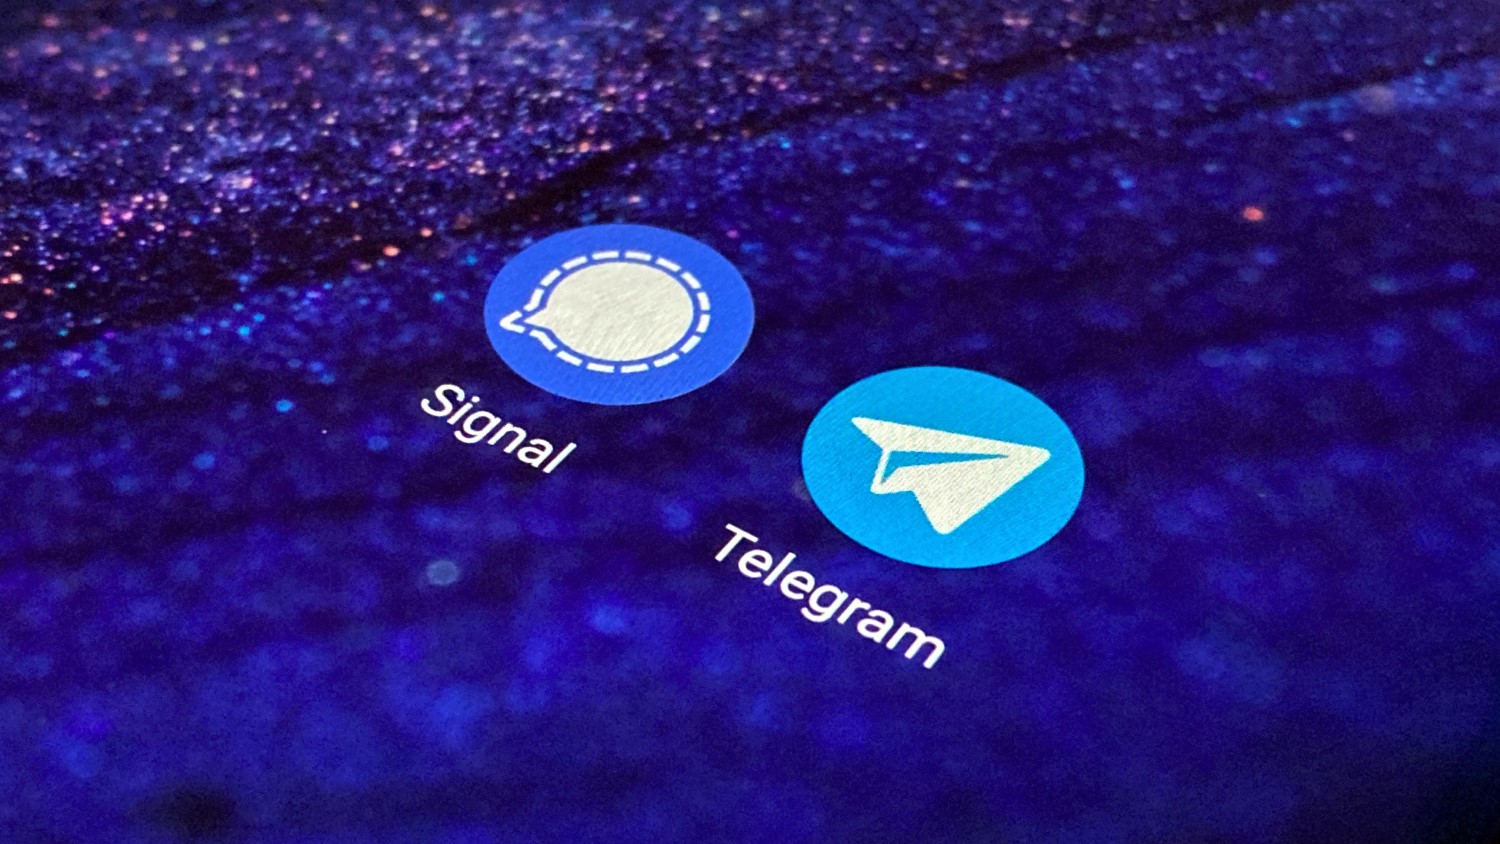 Kas peaksite üle minema telegrammile või signaalile?